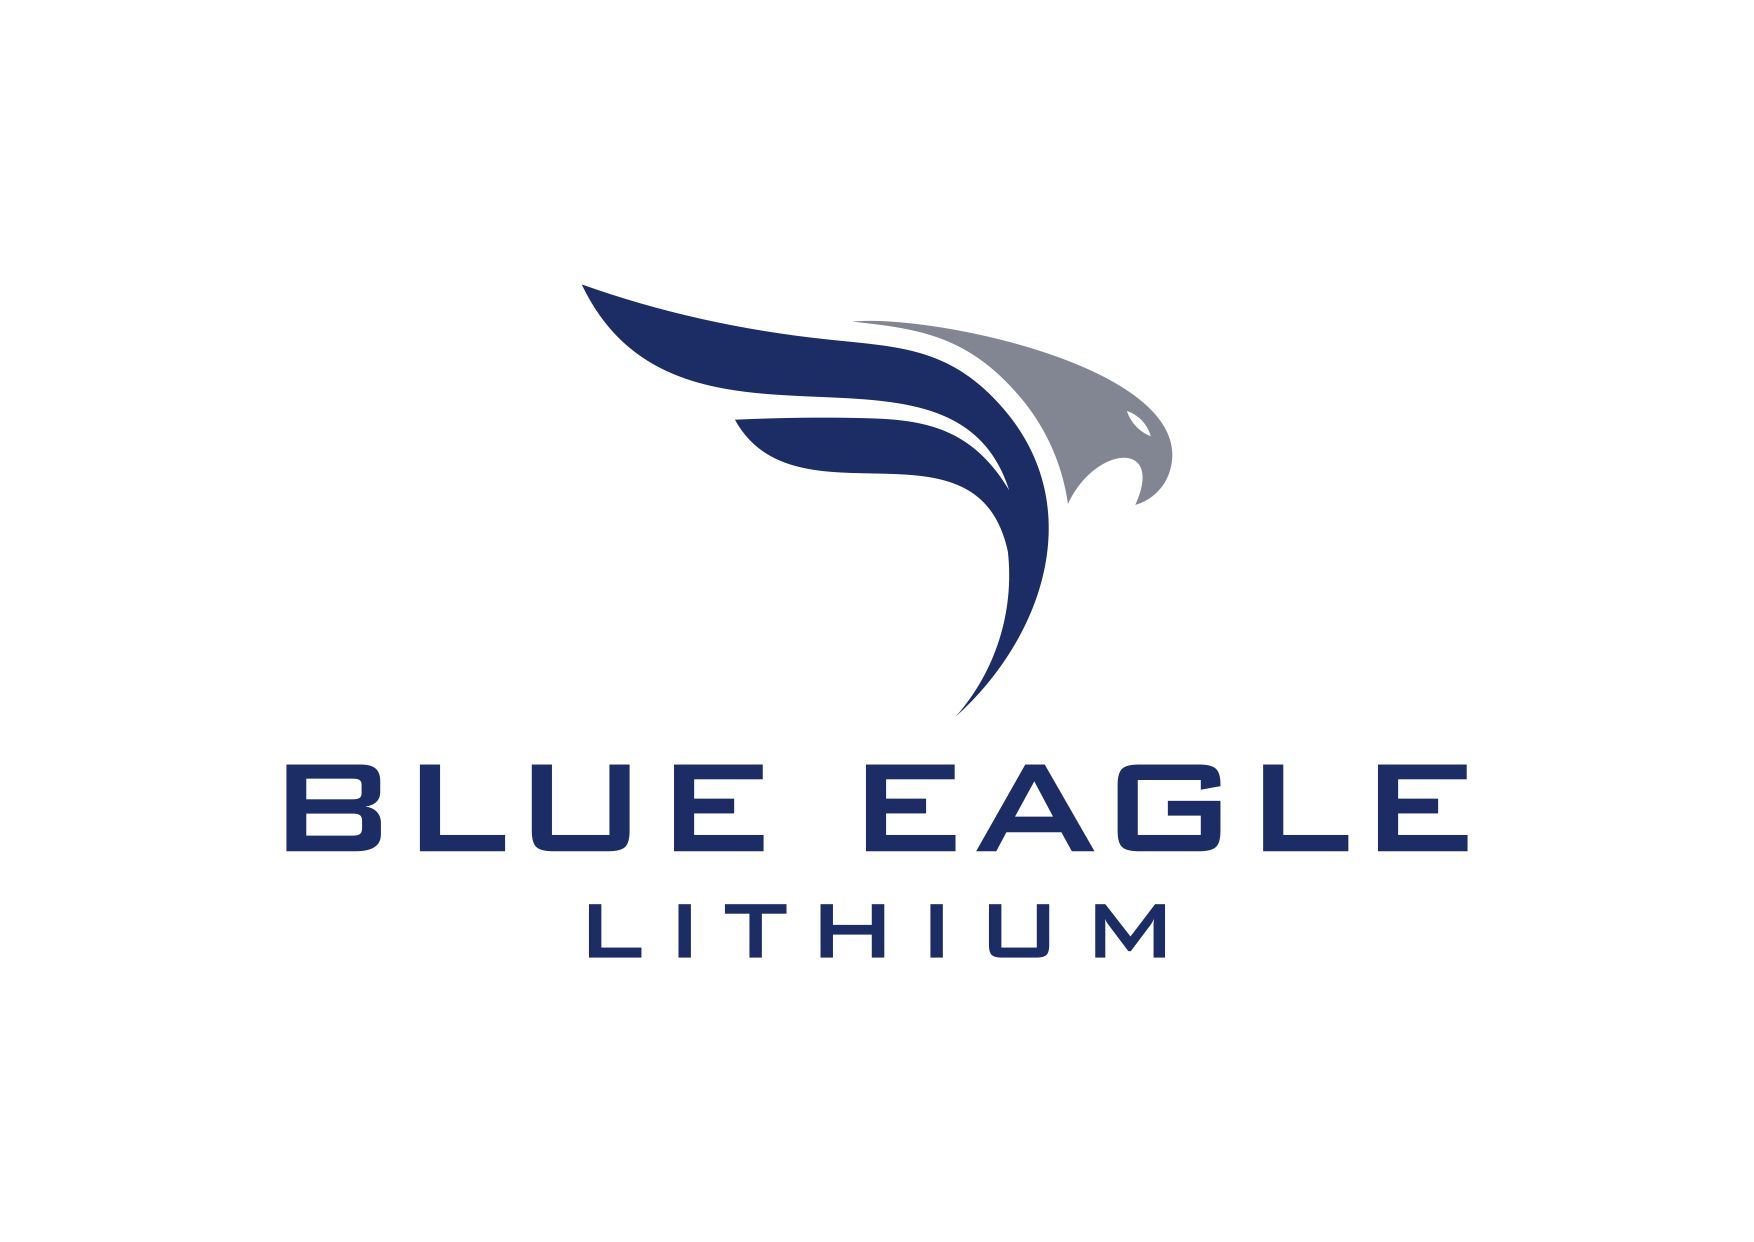 BlueEagle_logo.jpg